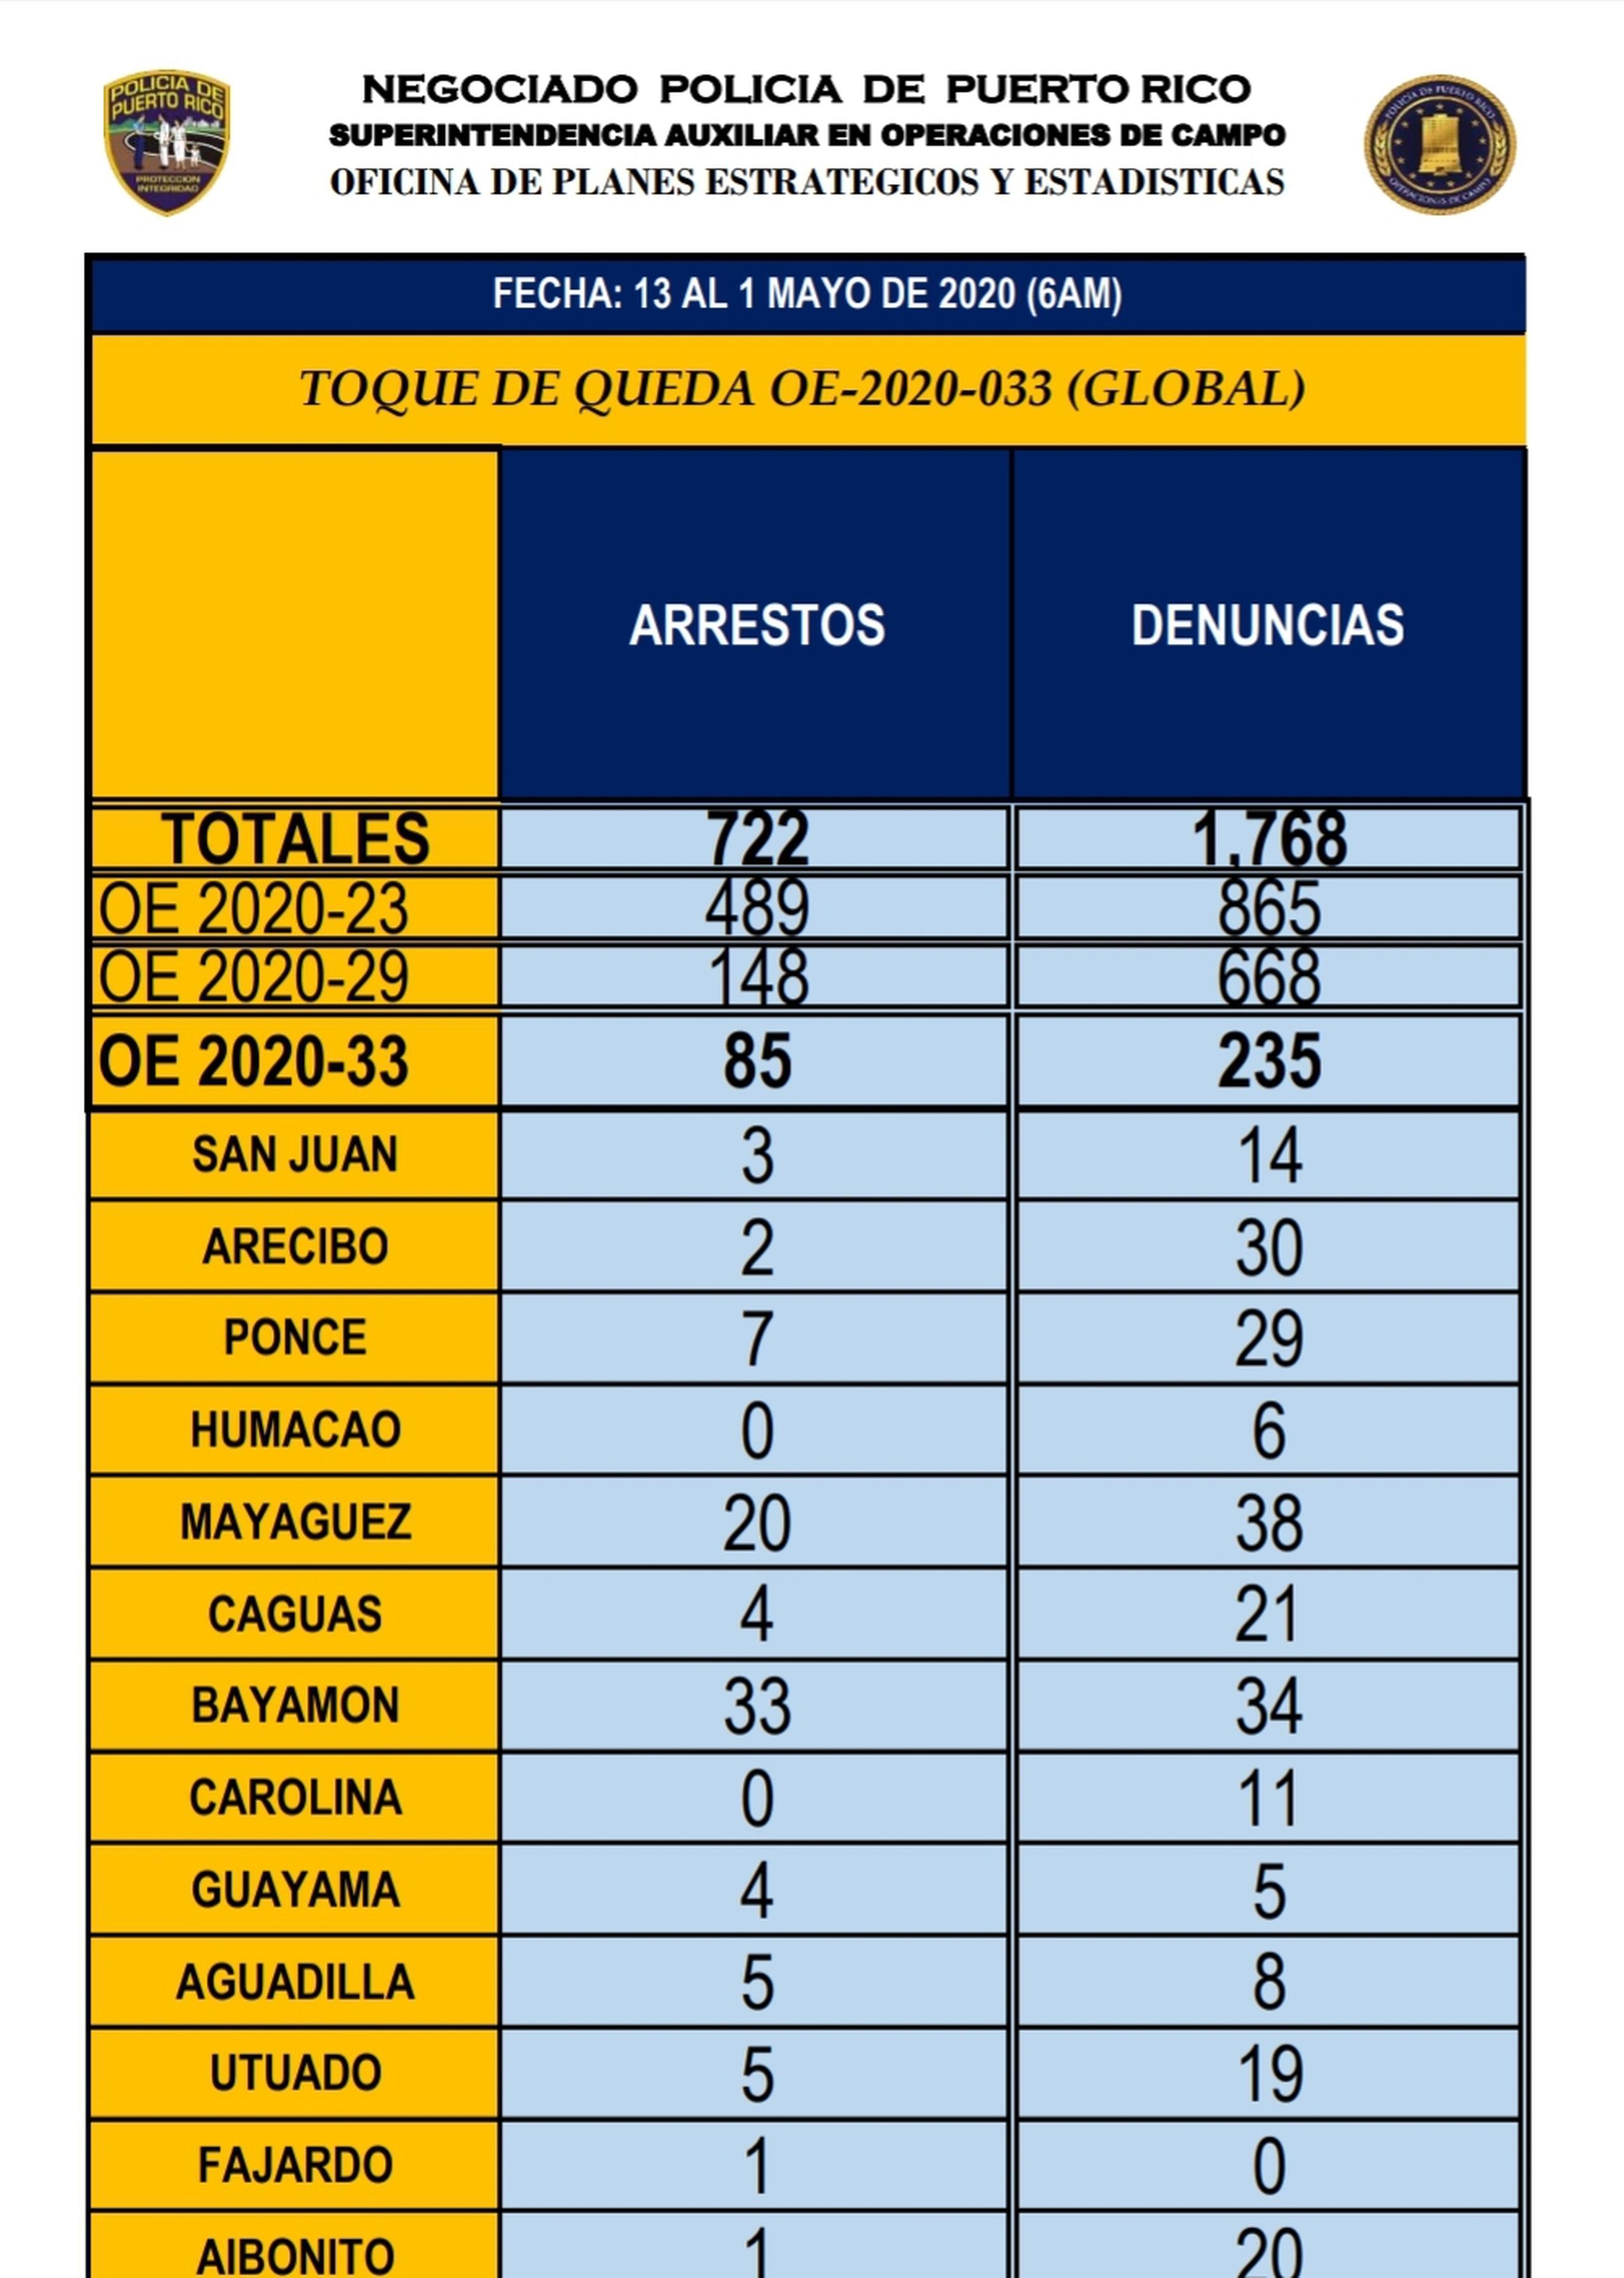 Desde el 15 de marzo se han arrestado 722 personas y multado a 1,768, según estadísticas diarias del Negociado de la Policía de Puerto Rico.